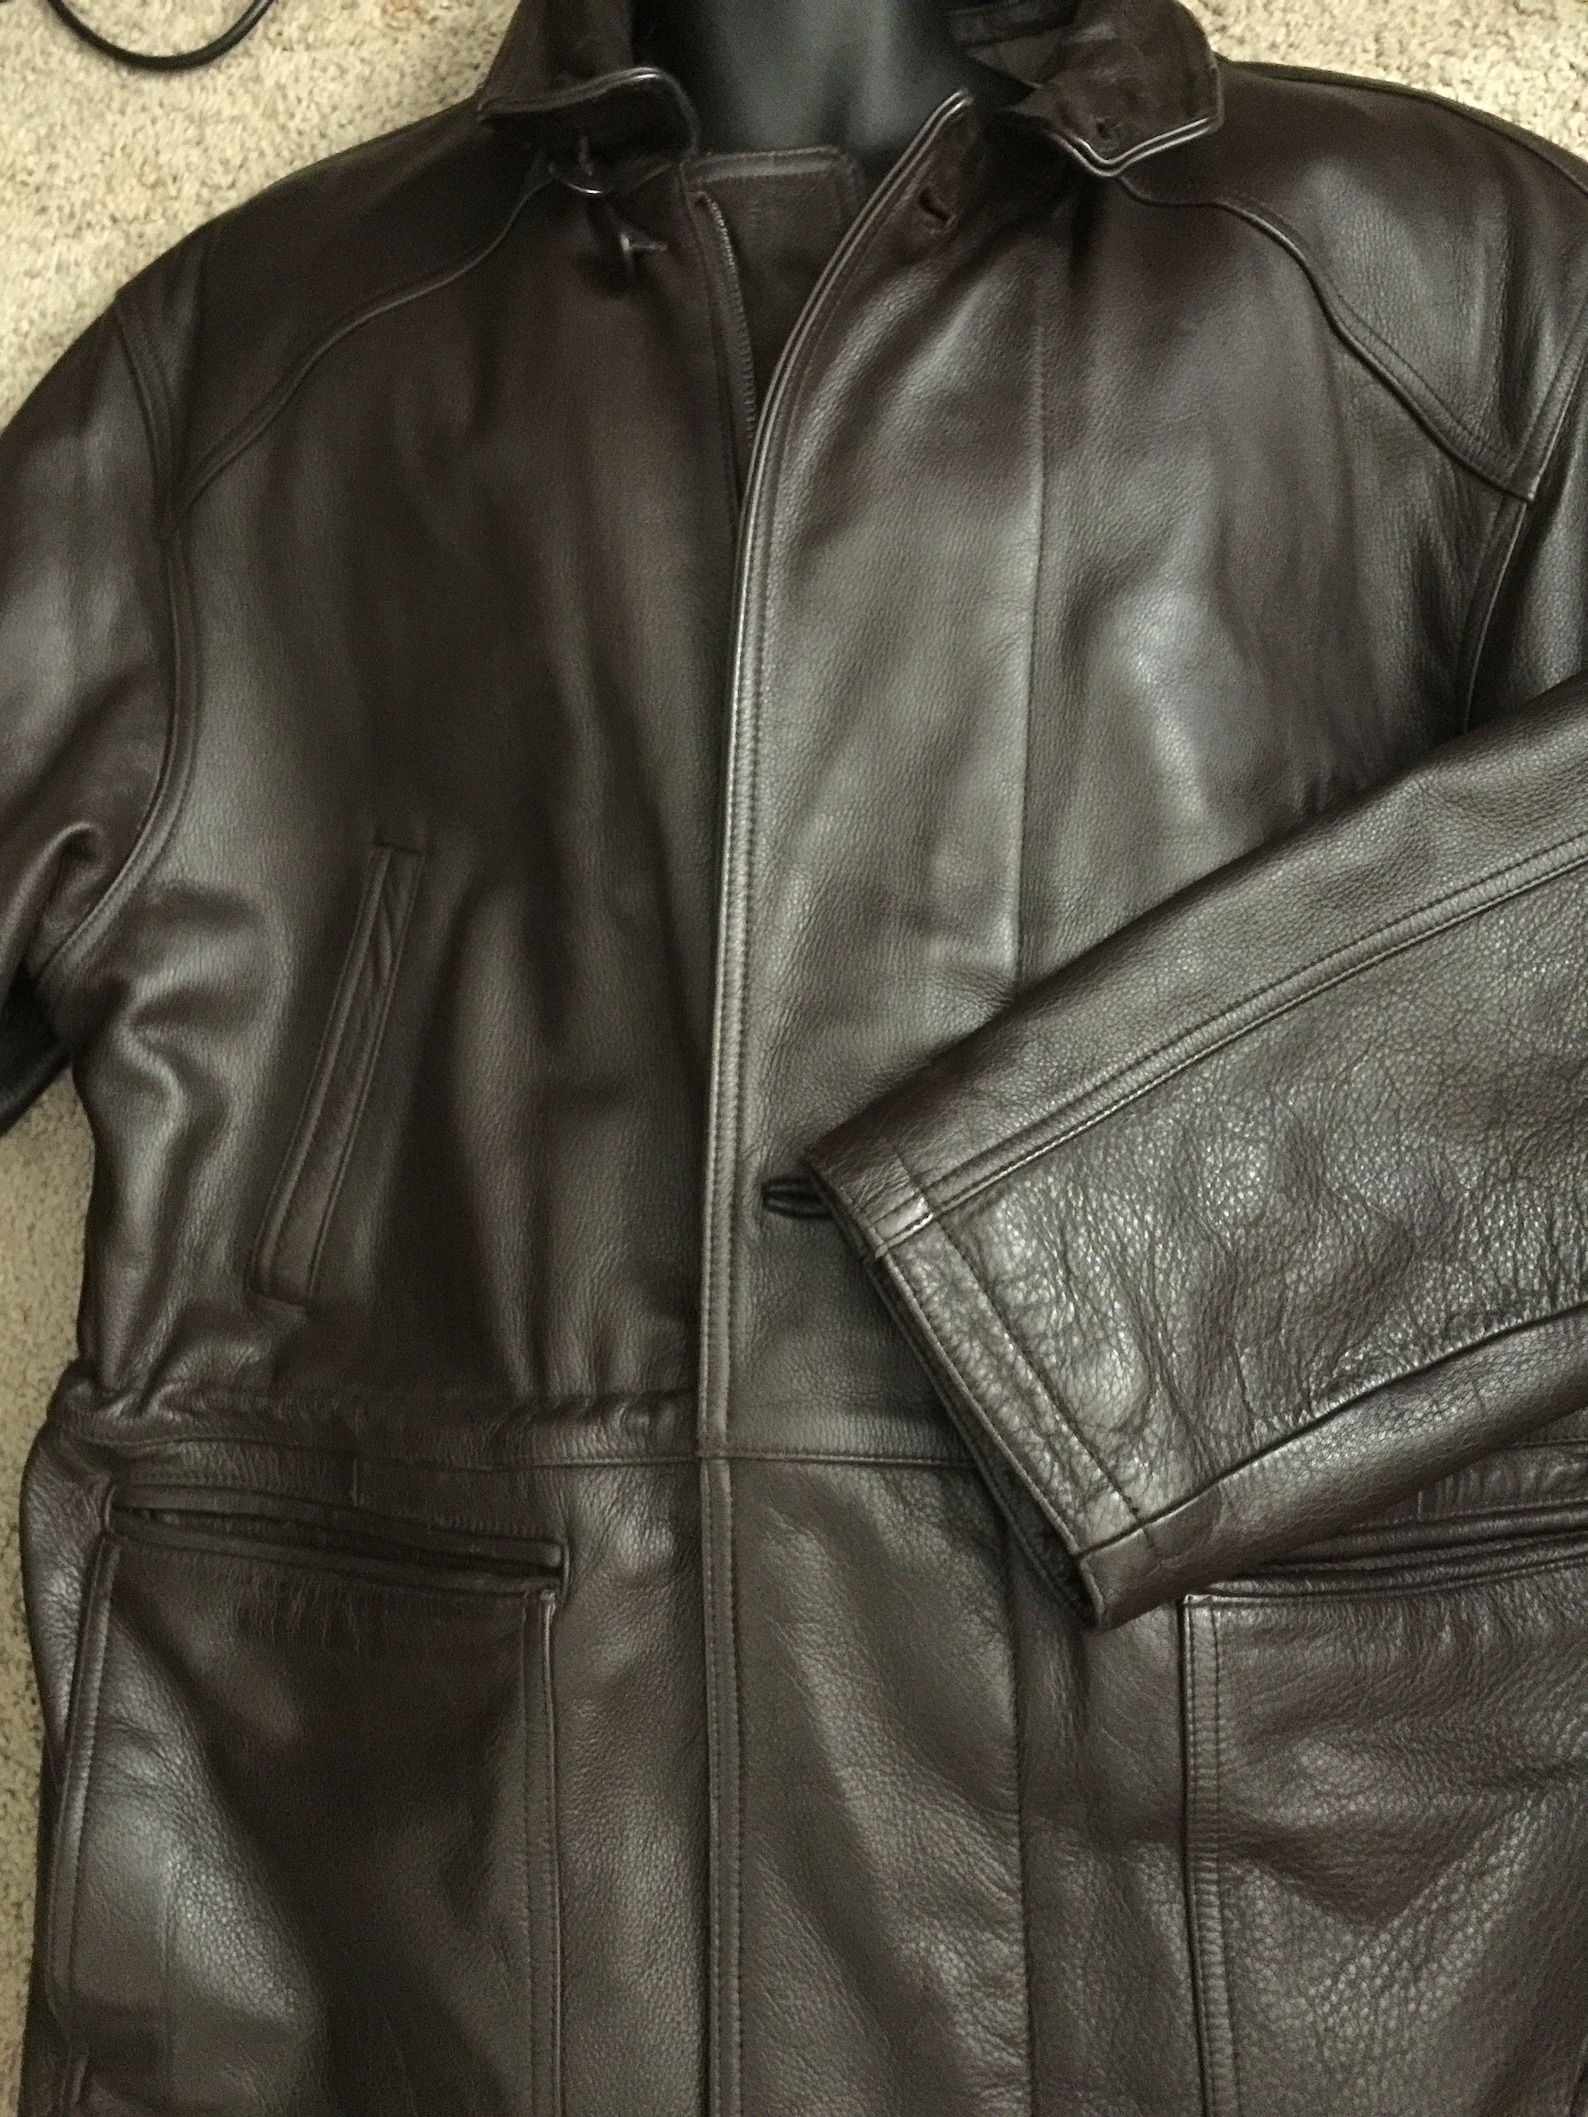 Mens PARADOX Heavy Leather Coat XL - Etsy